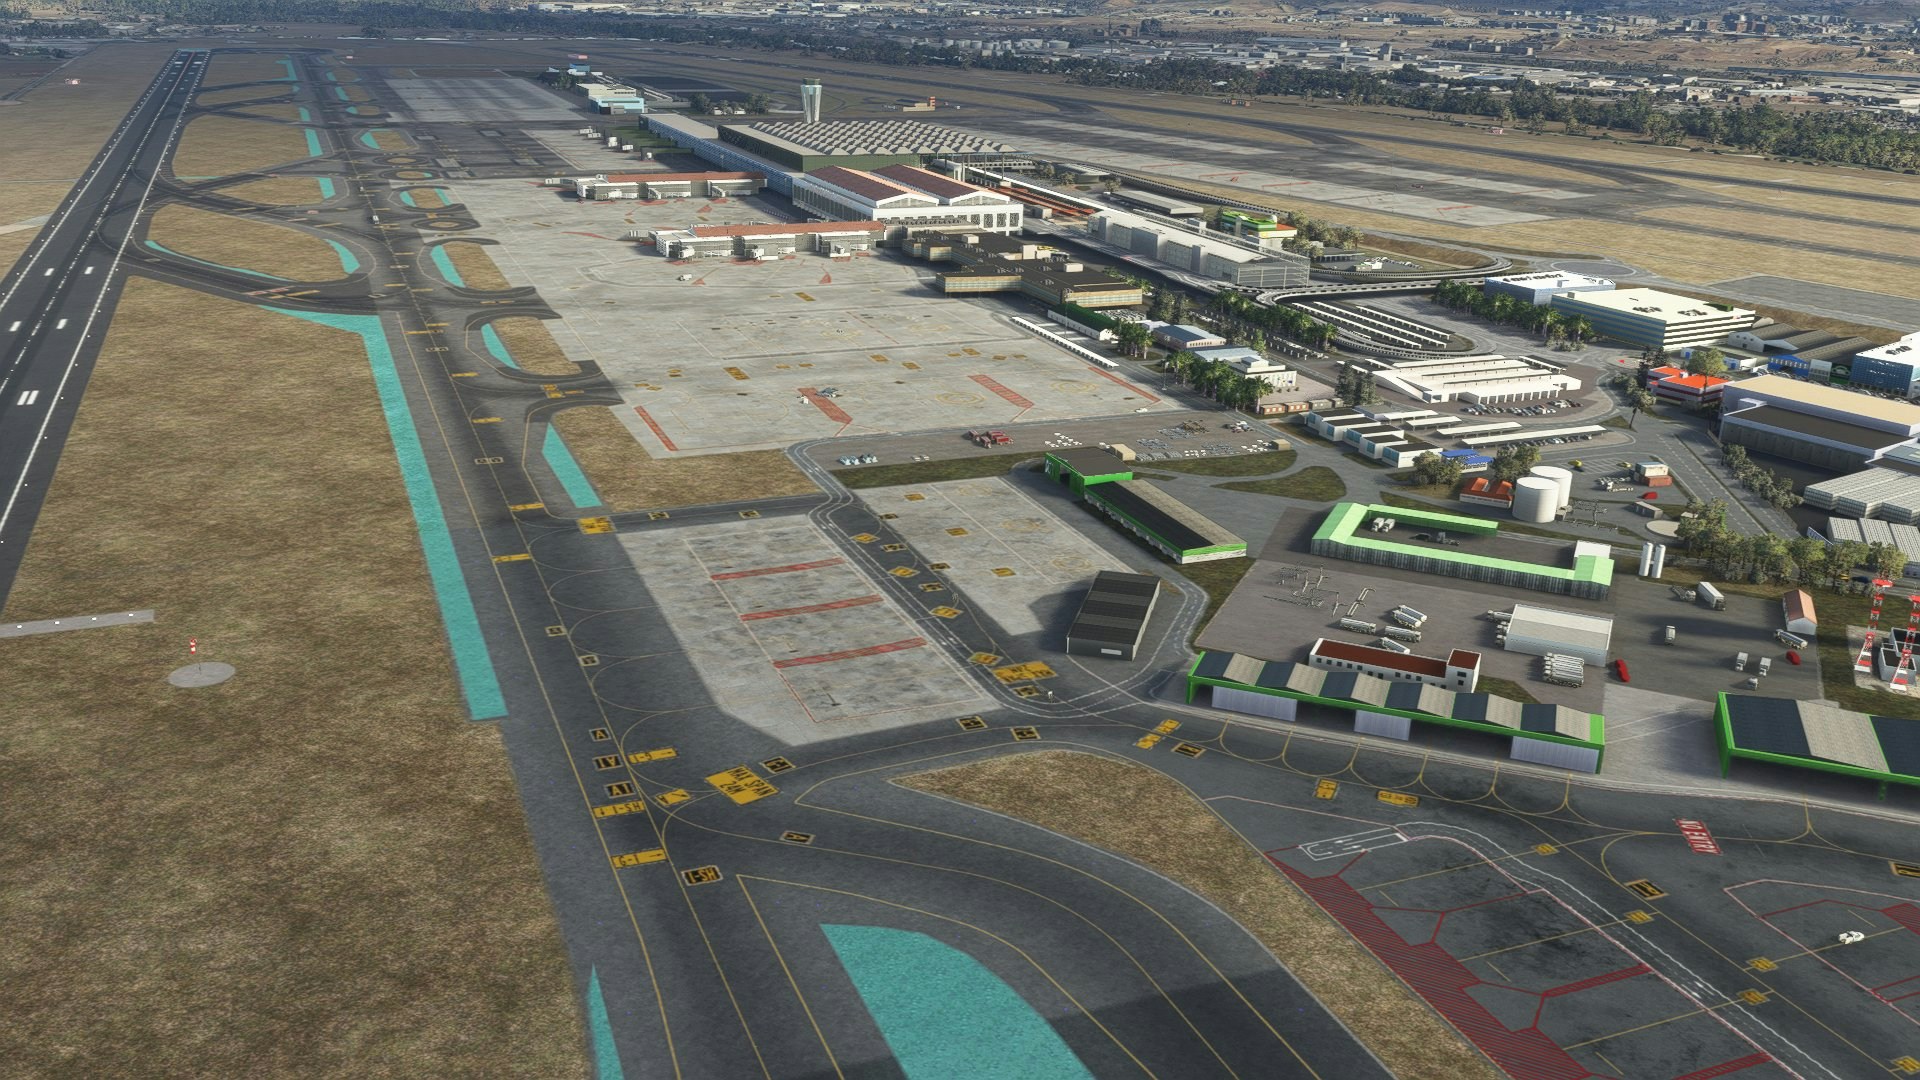 Barelli MSFS Addon Releases Malaga Airport